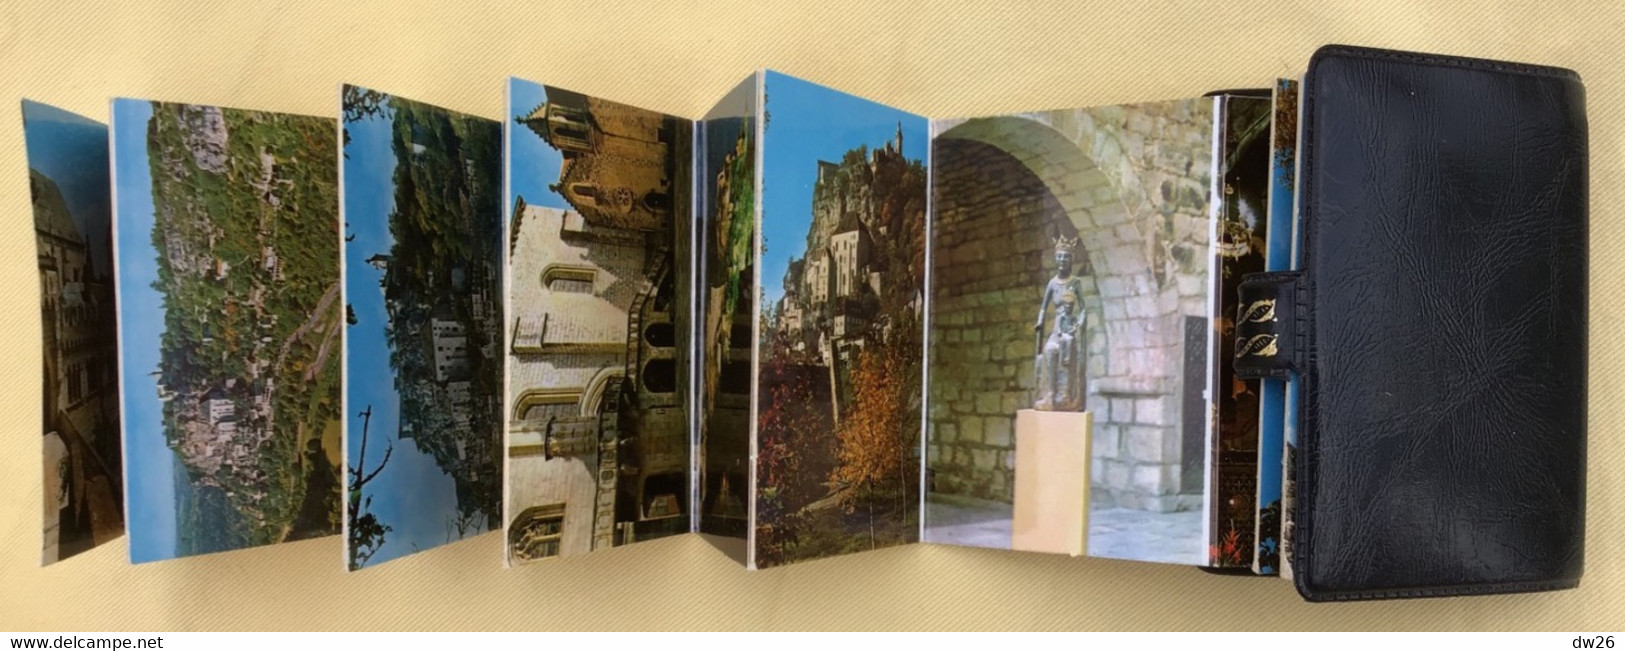 Dépliant Touristique Dans Mini Carnet Simili Cuir: Rocamadour, 2ème Site De France - 14 Photos Avec Commentaire - Tourism Brochures